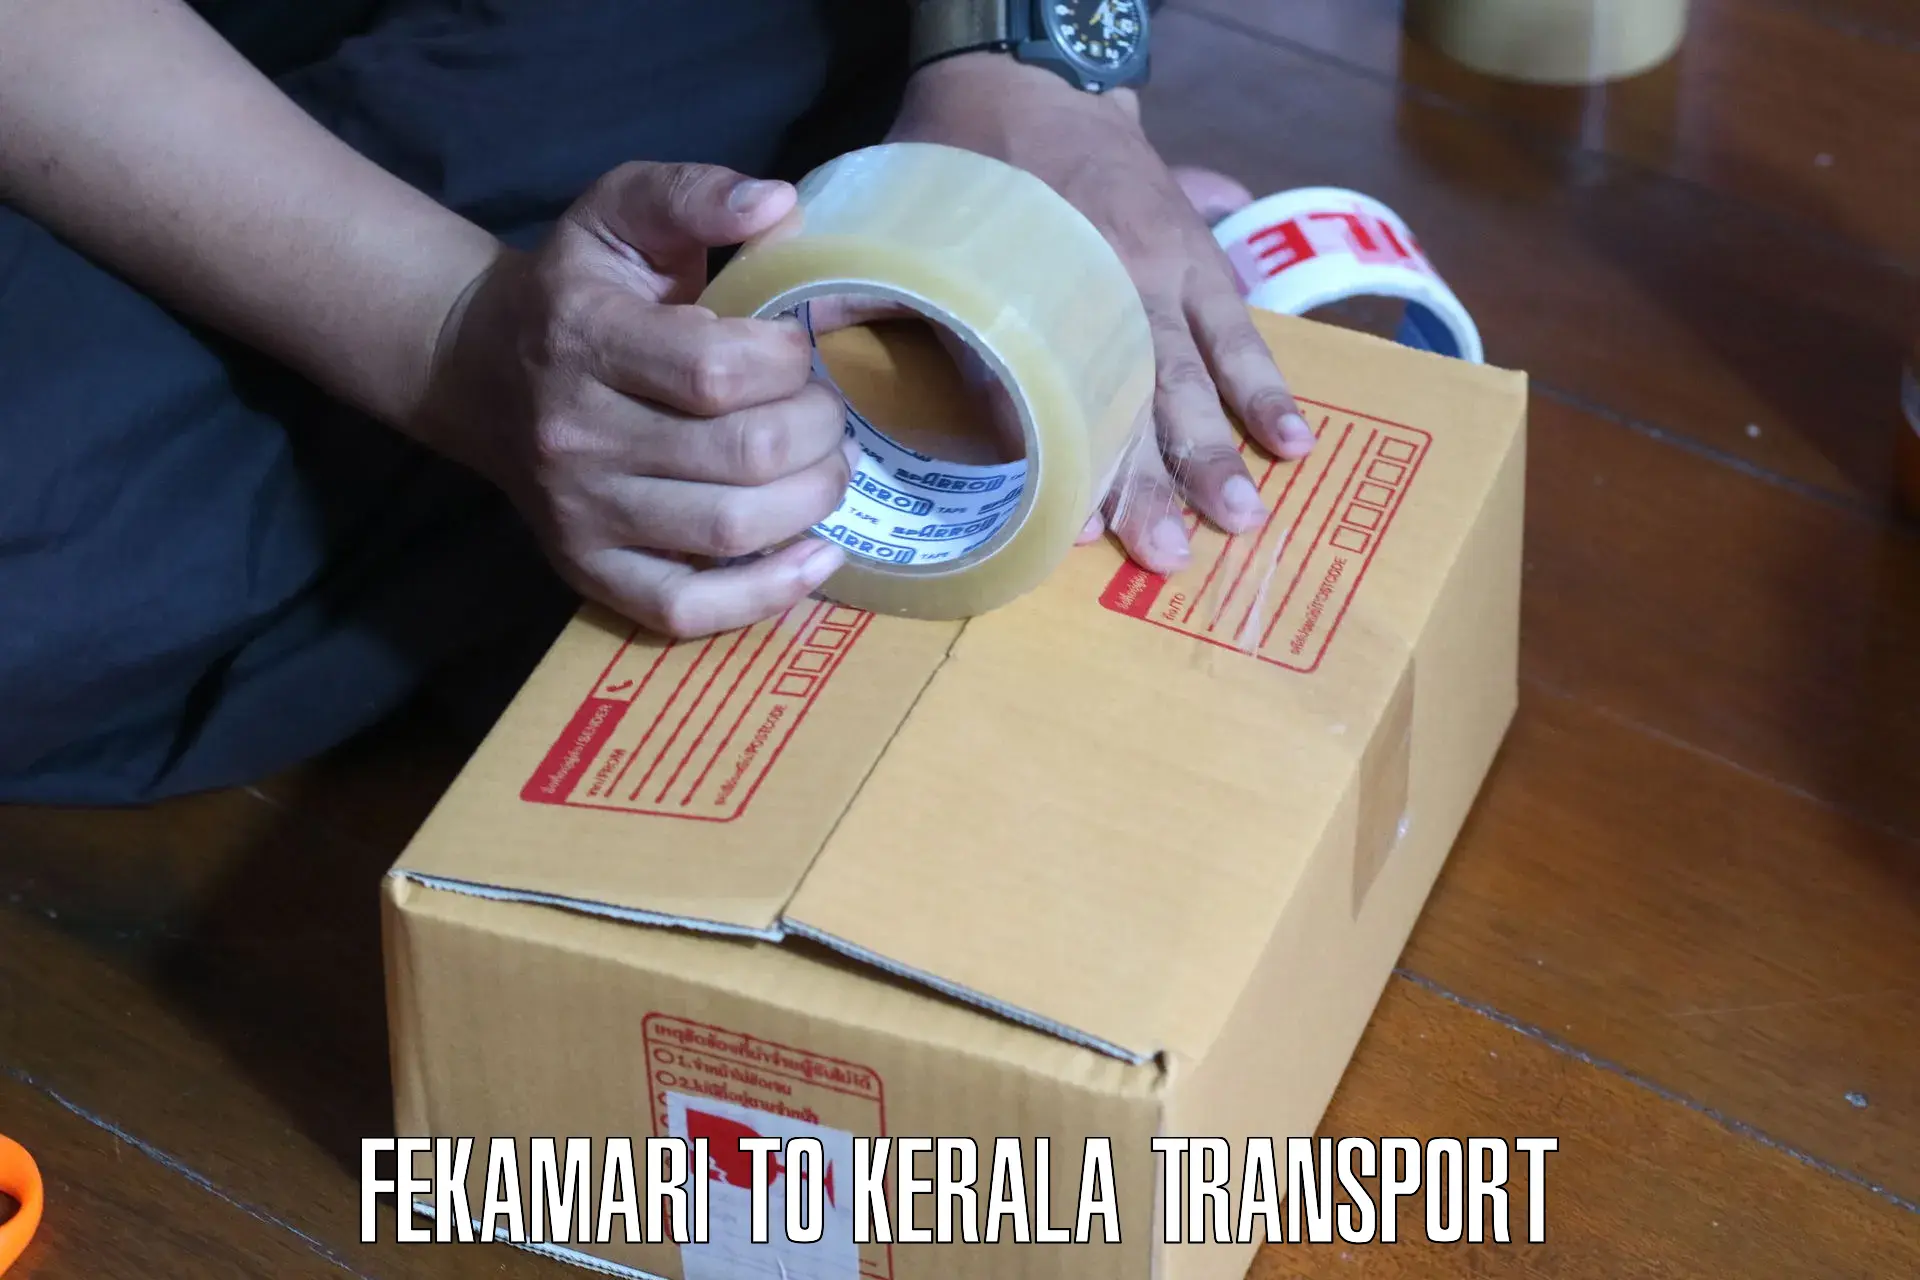 Express transport services Fekamari to Karunagappally